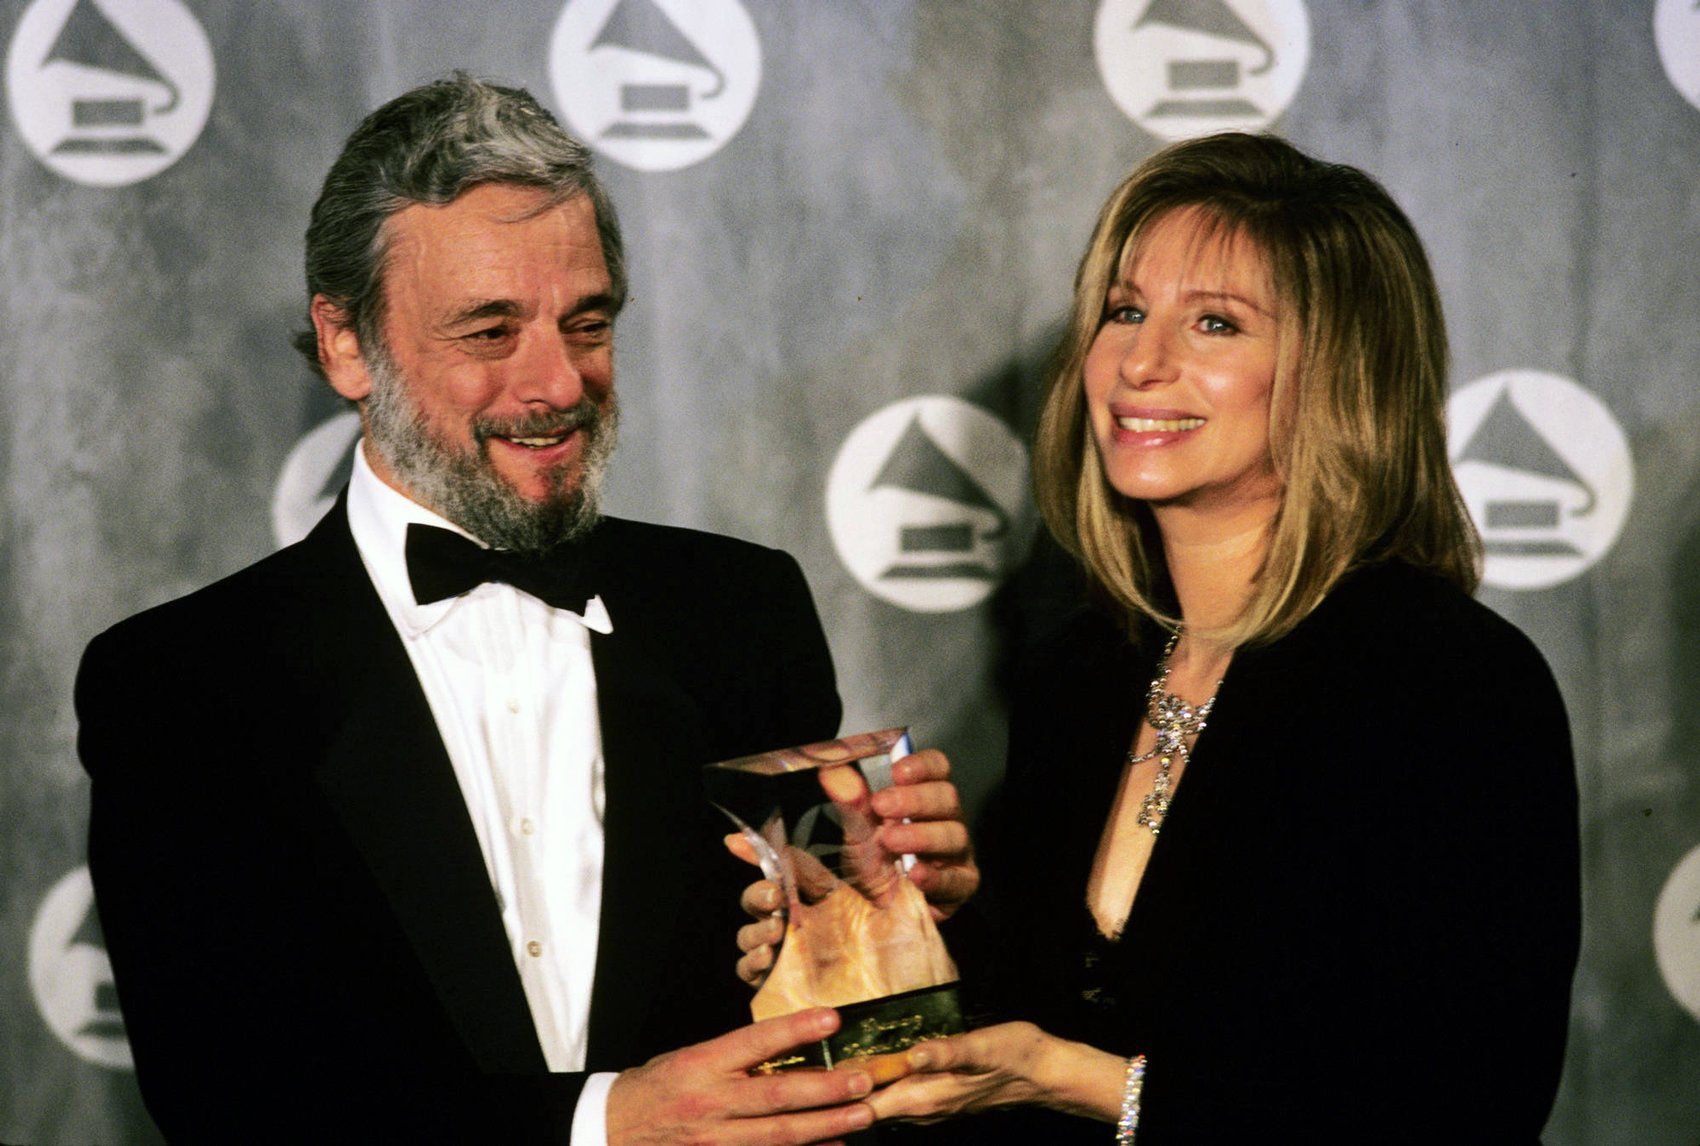 Stephen Sondheim presents Barbra Streisand a Grammy Legend Award in 1992.